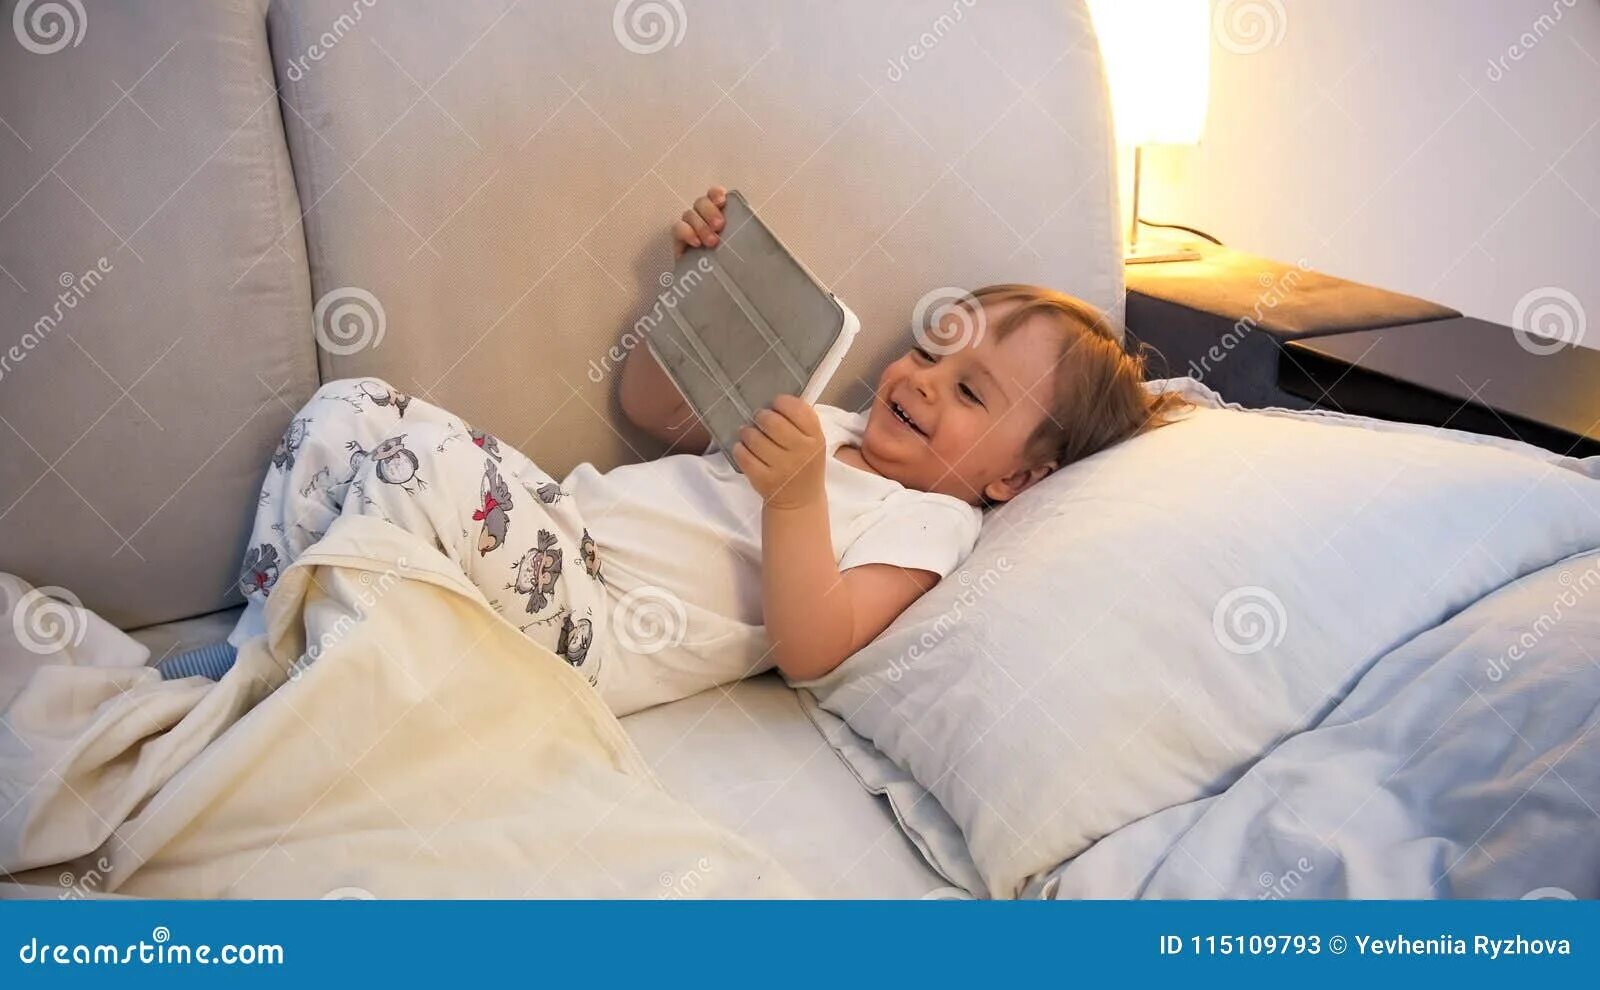 Читать лежа вредно лежа на горячем песке. Чтение лёжа ребёнок. Ребенок читает в кровати. Ребенок лежит на кровати. Ребенок читает лежа.